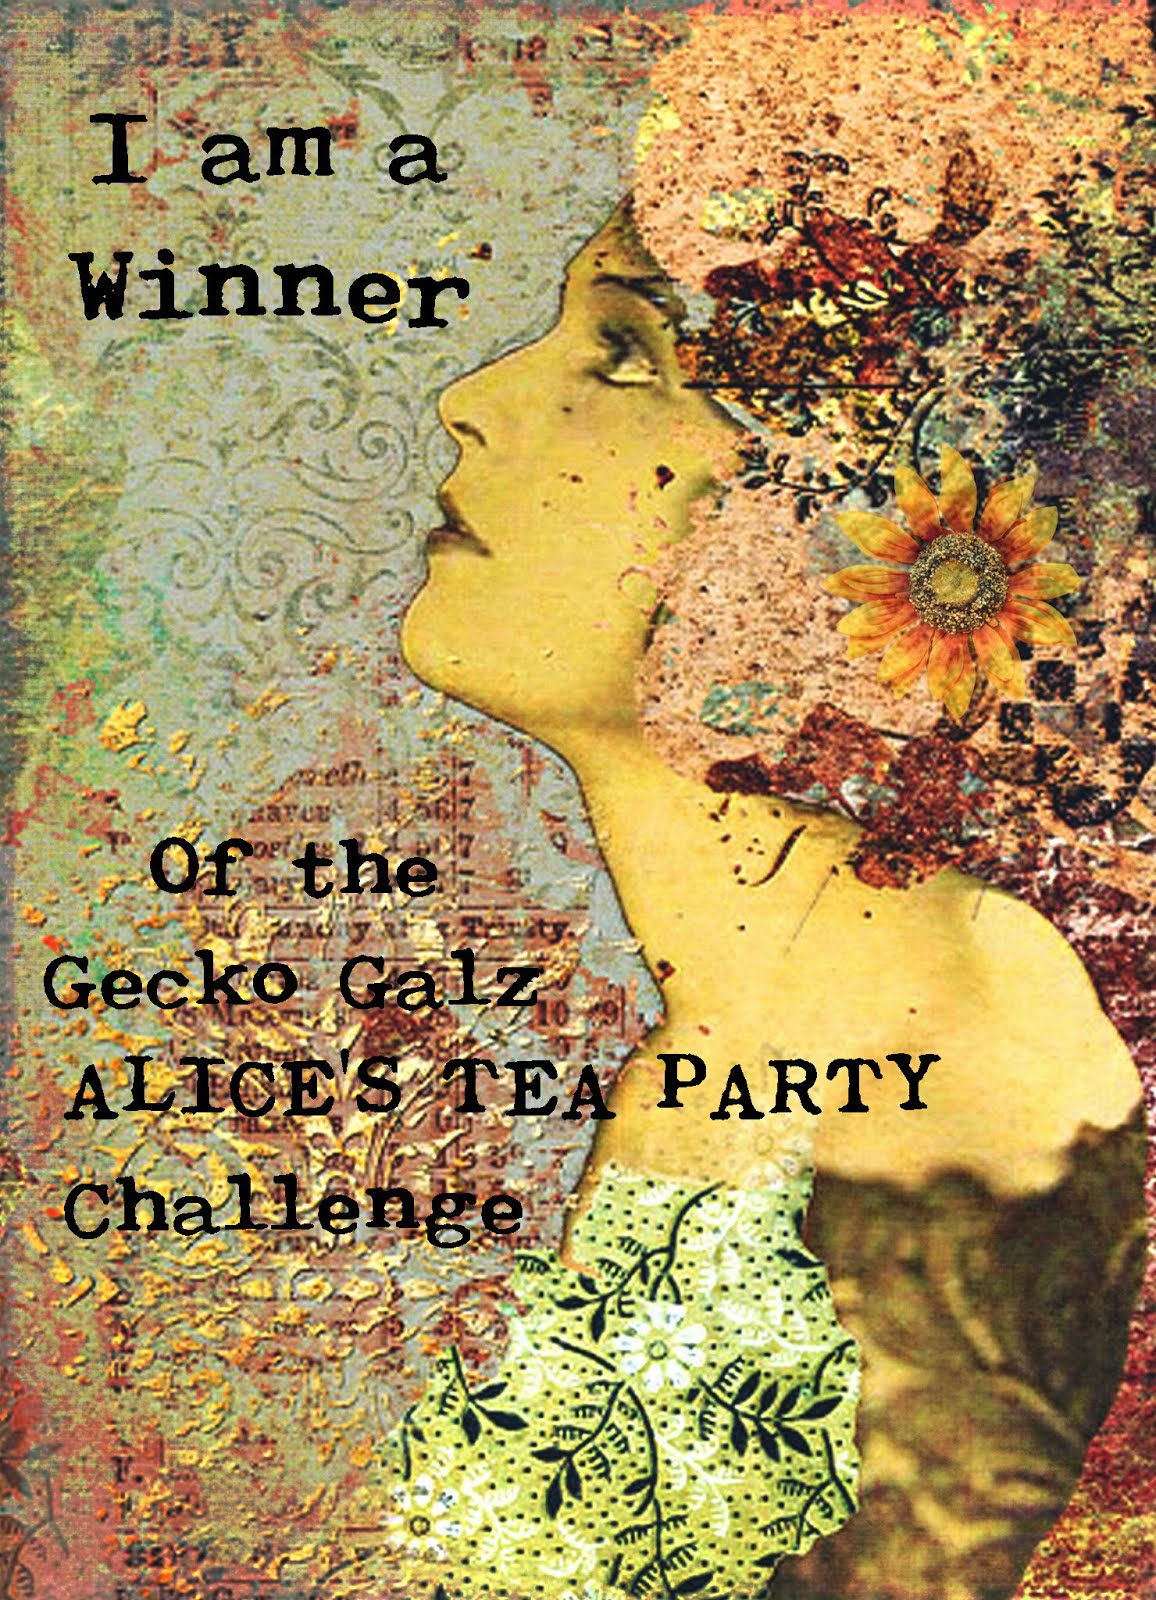 Gecko Gals Winner